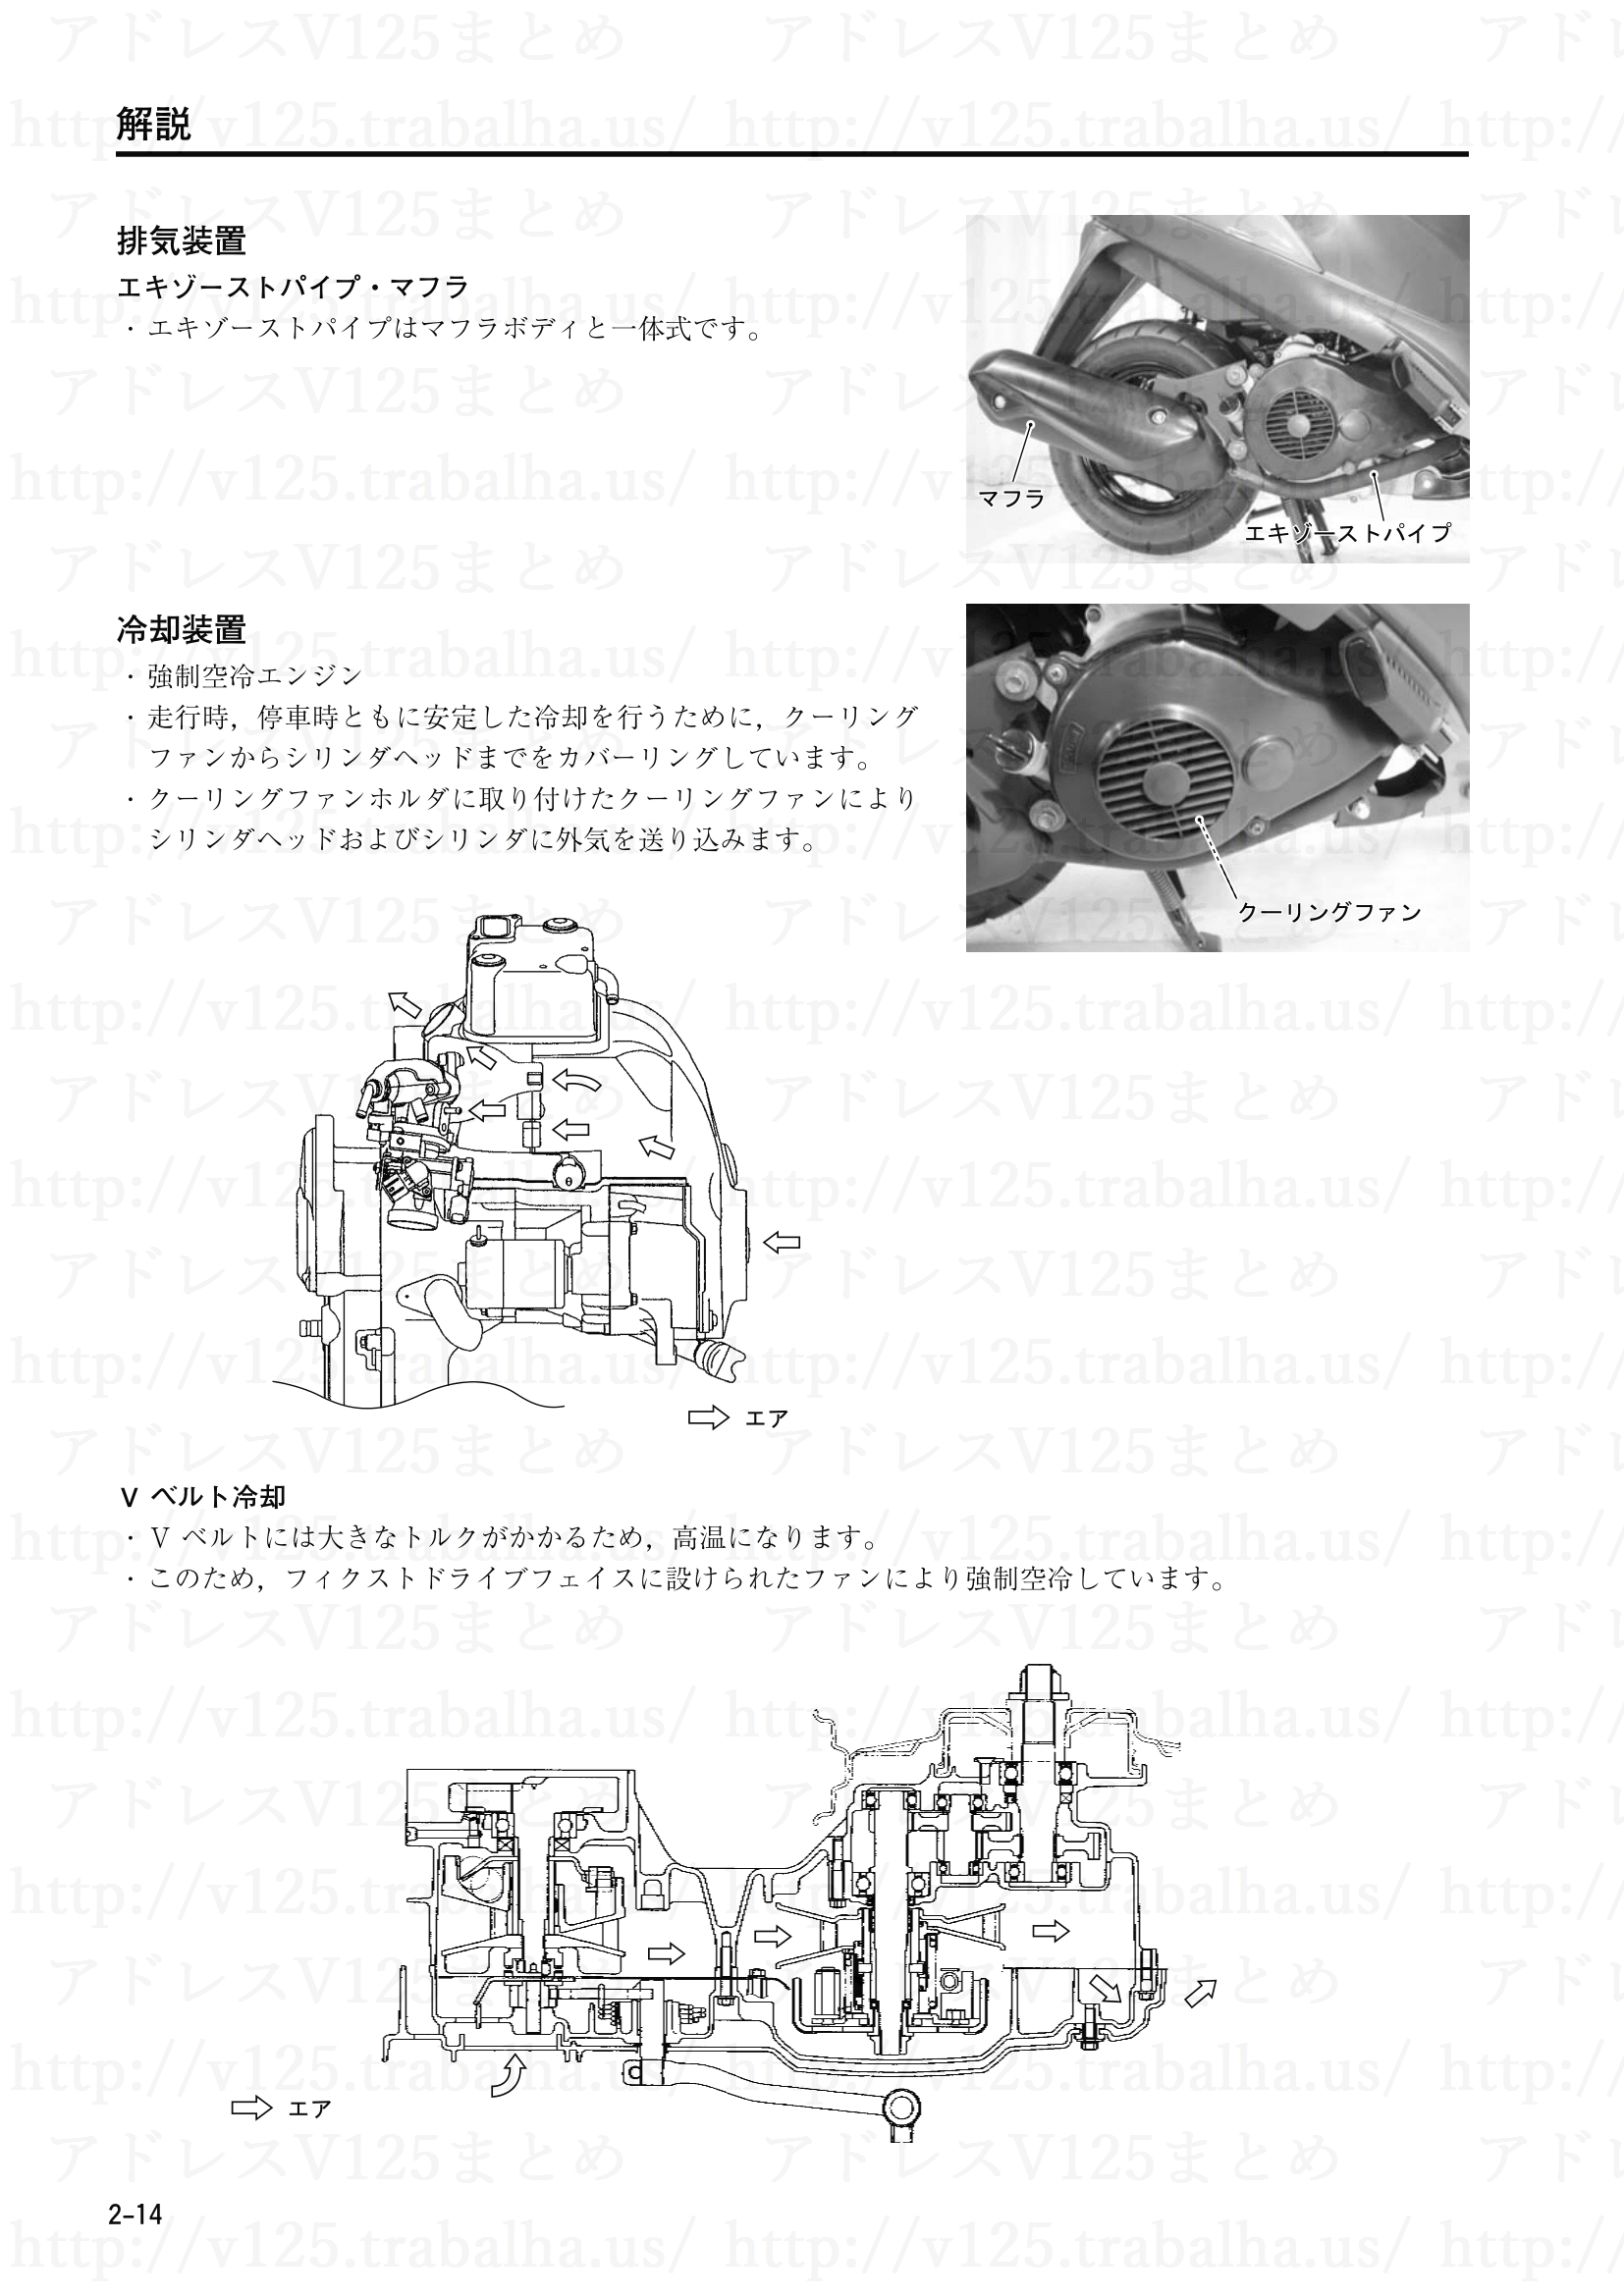 2-14【解説】排気装置/冷却装置